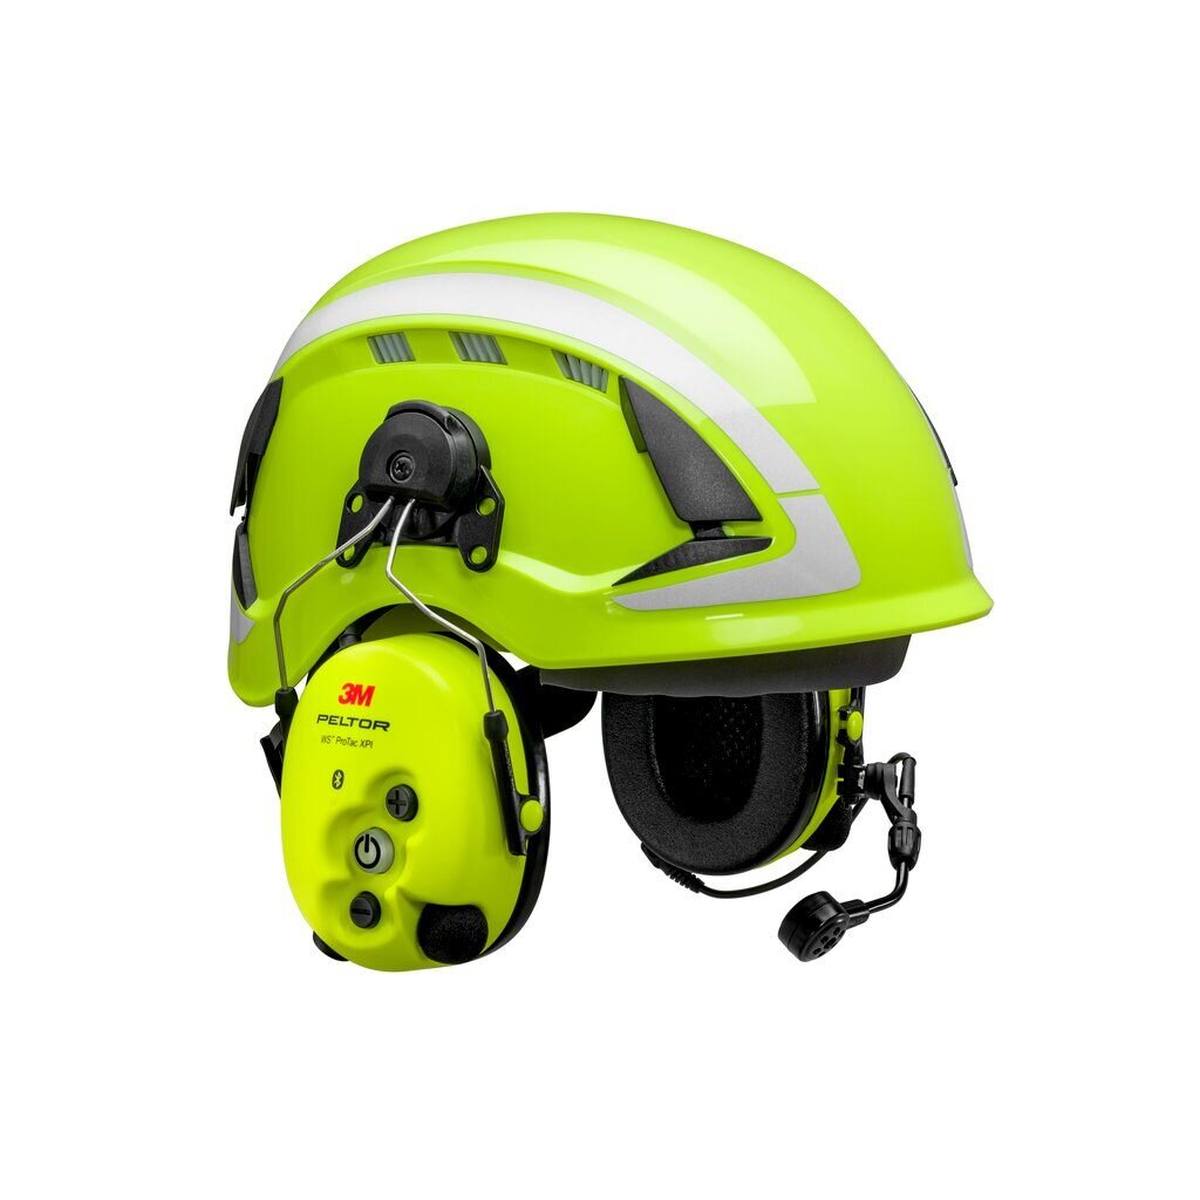 3M Peltor WS ProTac XPI cuffie di protezione dell'udito FLX2, fissaggio al casco, Bluetooth, giallo, MT15H7P3EWS6-111